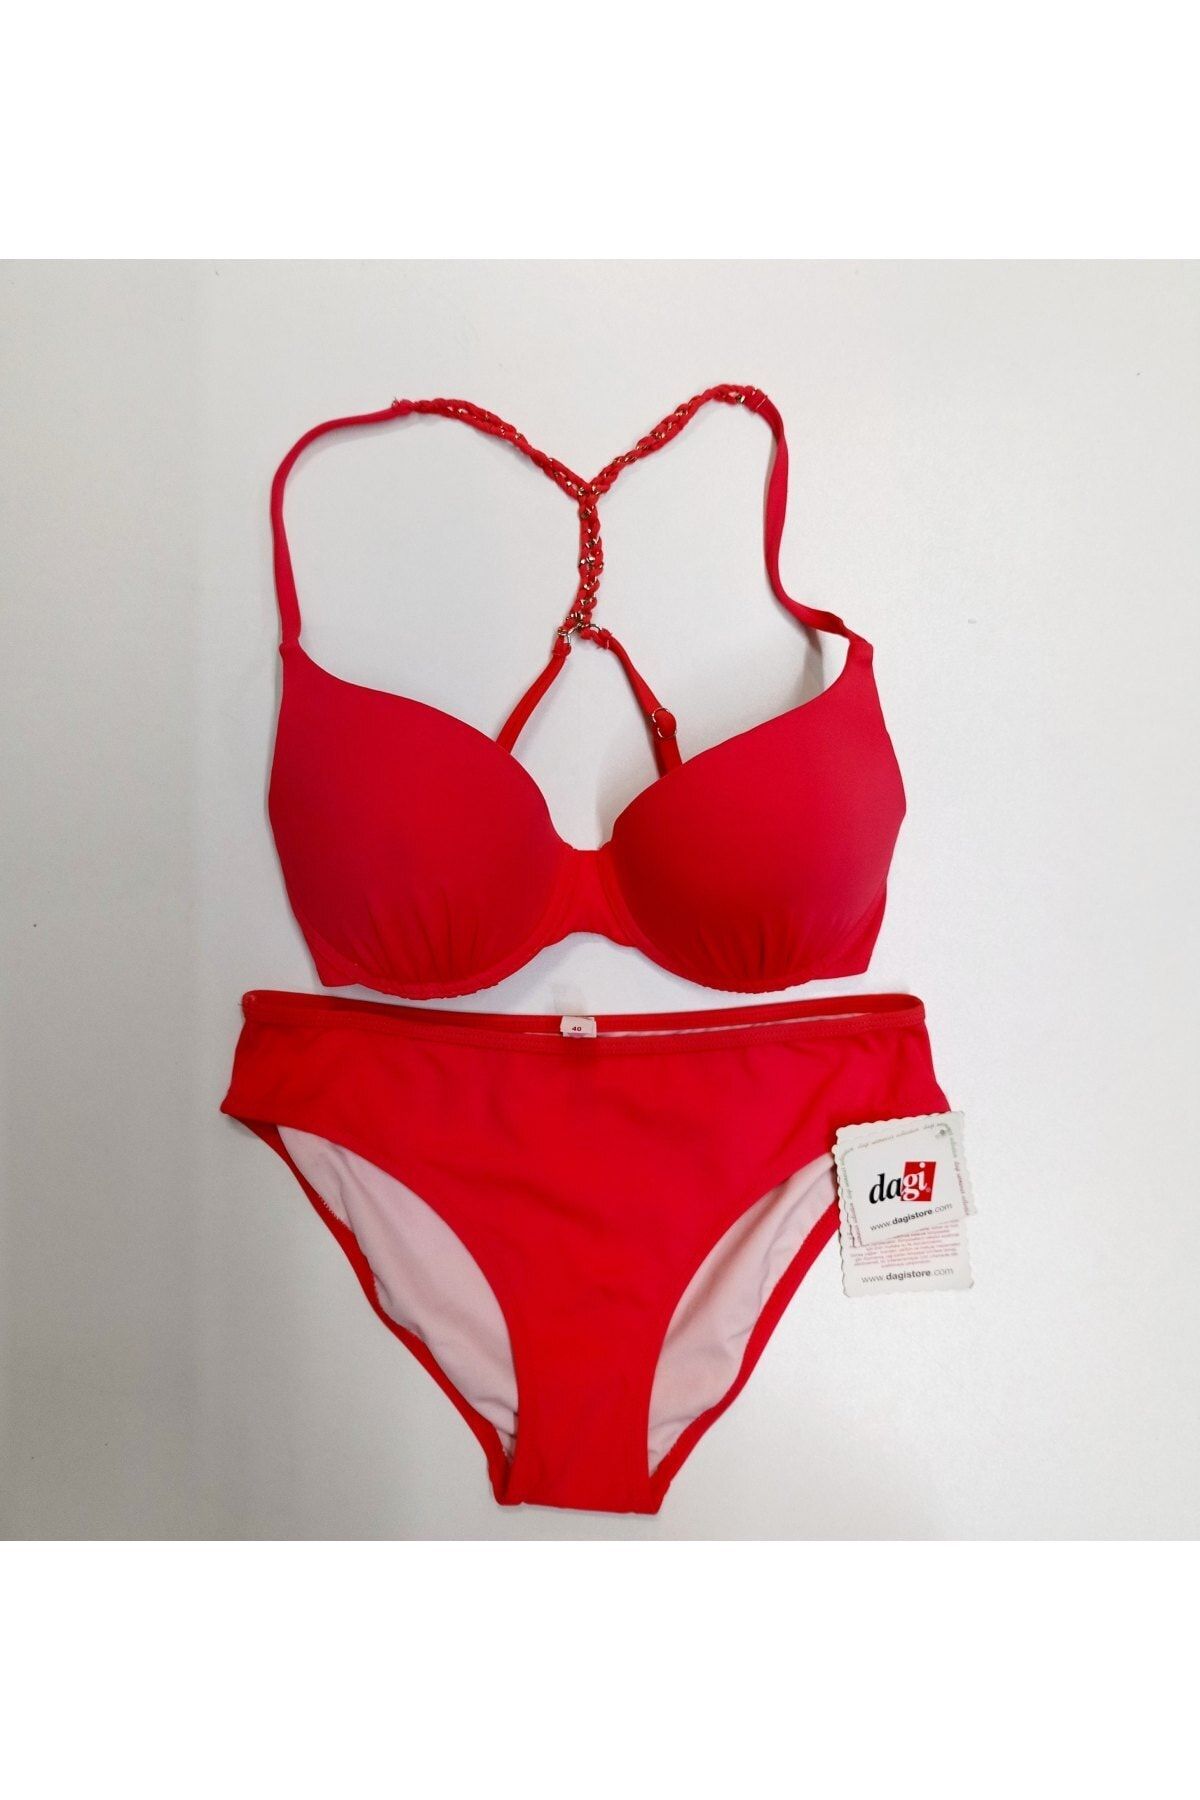 Dagi Kadın Kırmızı Kaplı Sırtı Çapraz Taşlı Bikini Takımı